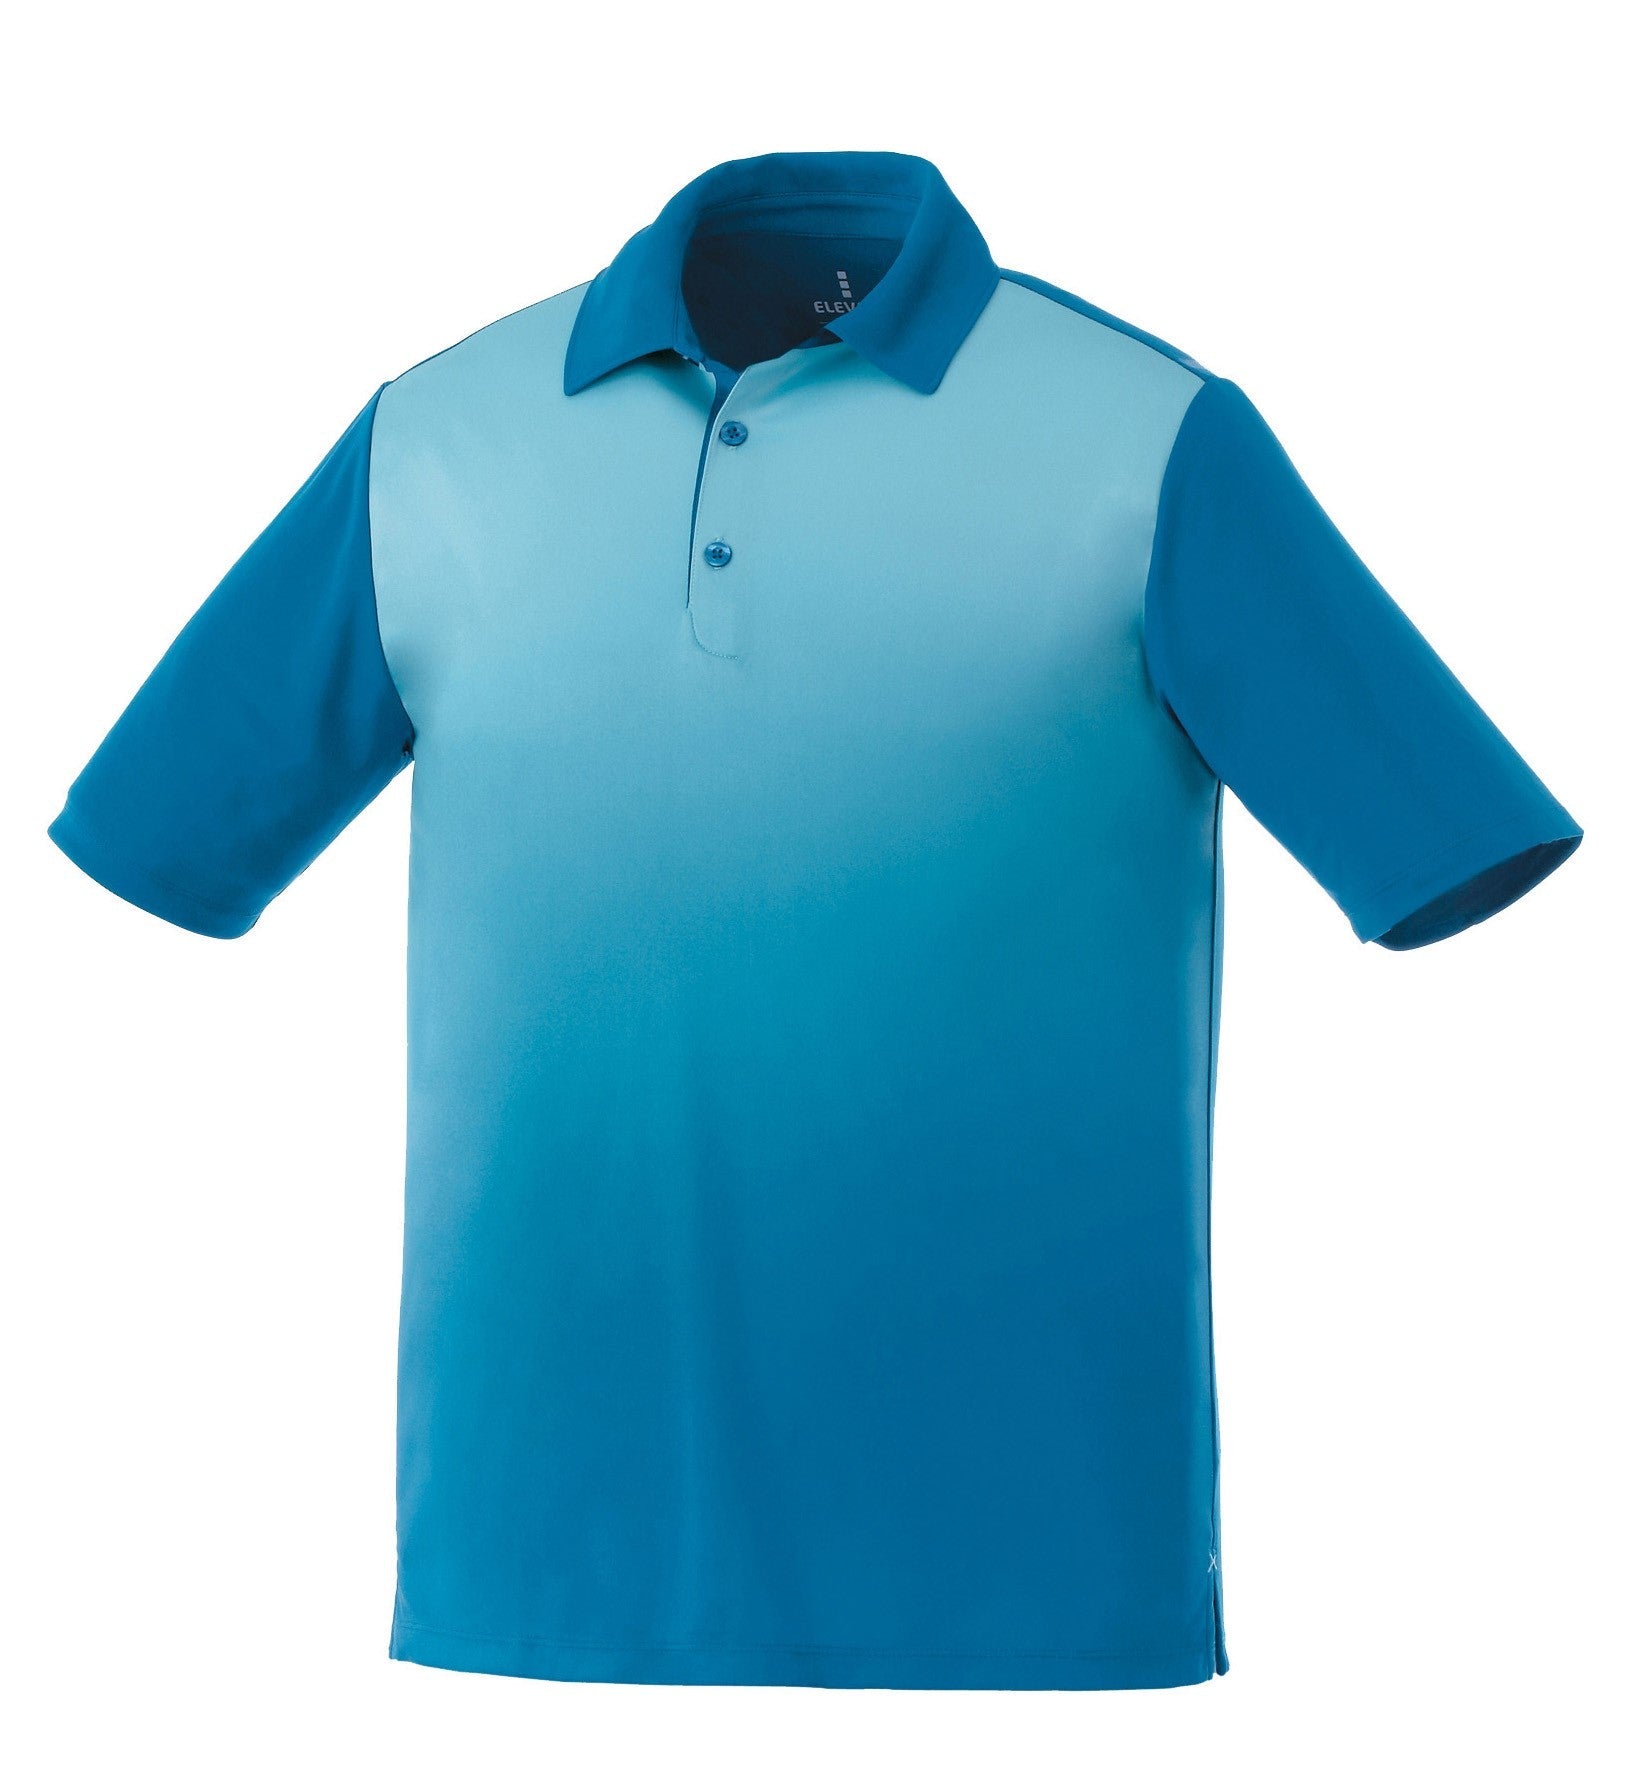 Mens Next Golf Shirt - Light Blue Only-L-Light Blue-LB